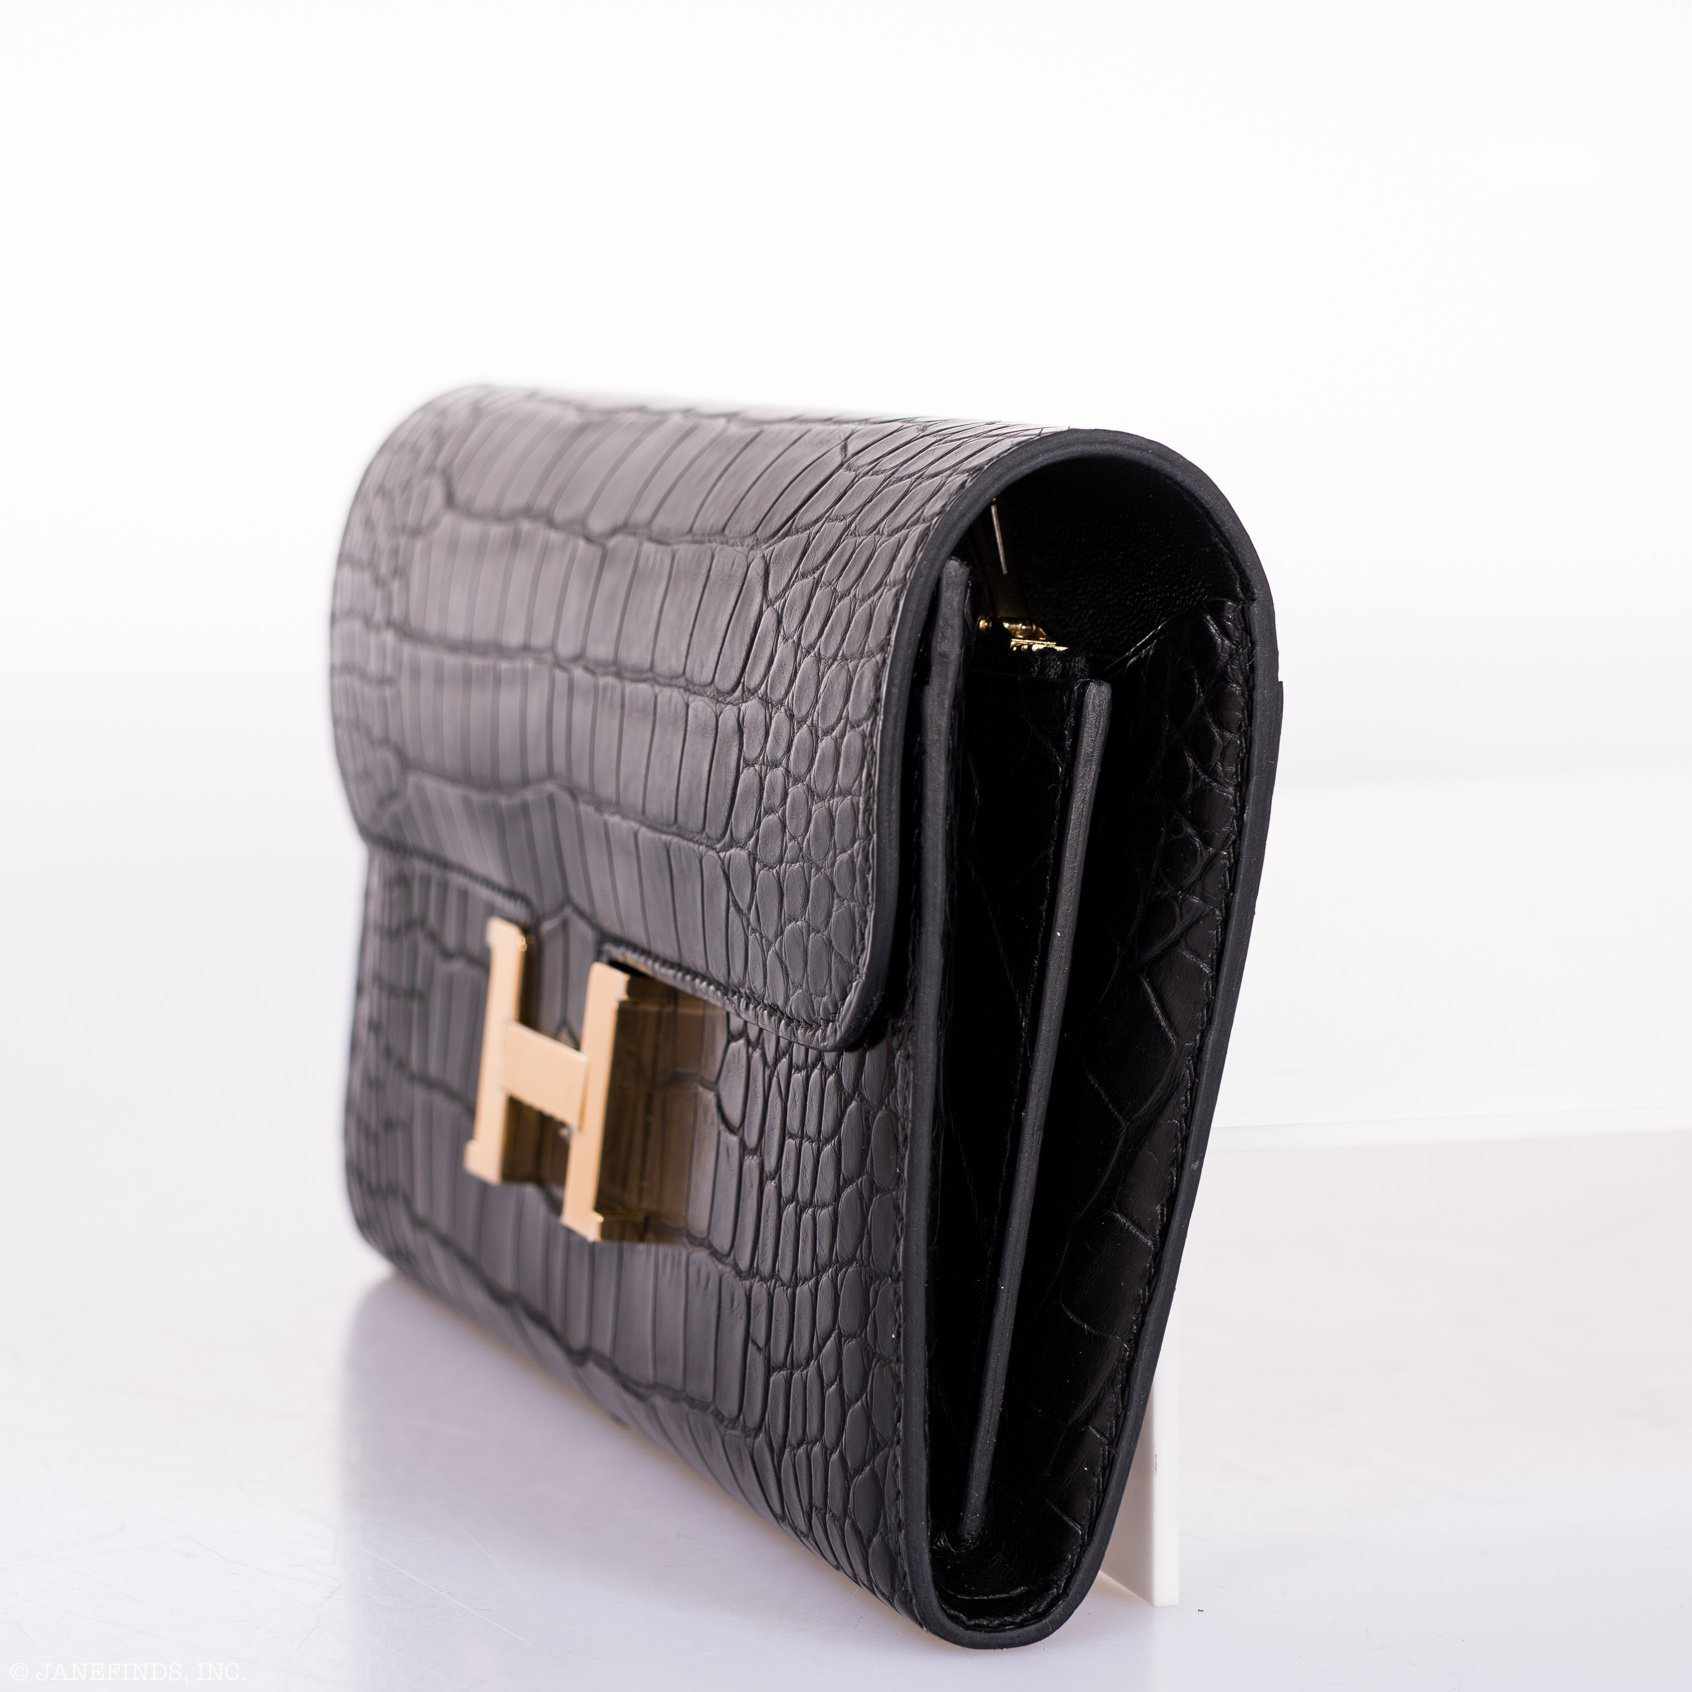 Hermès Constance Long Wallet Black Matte Alligator Gold Hardware